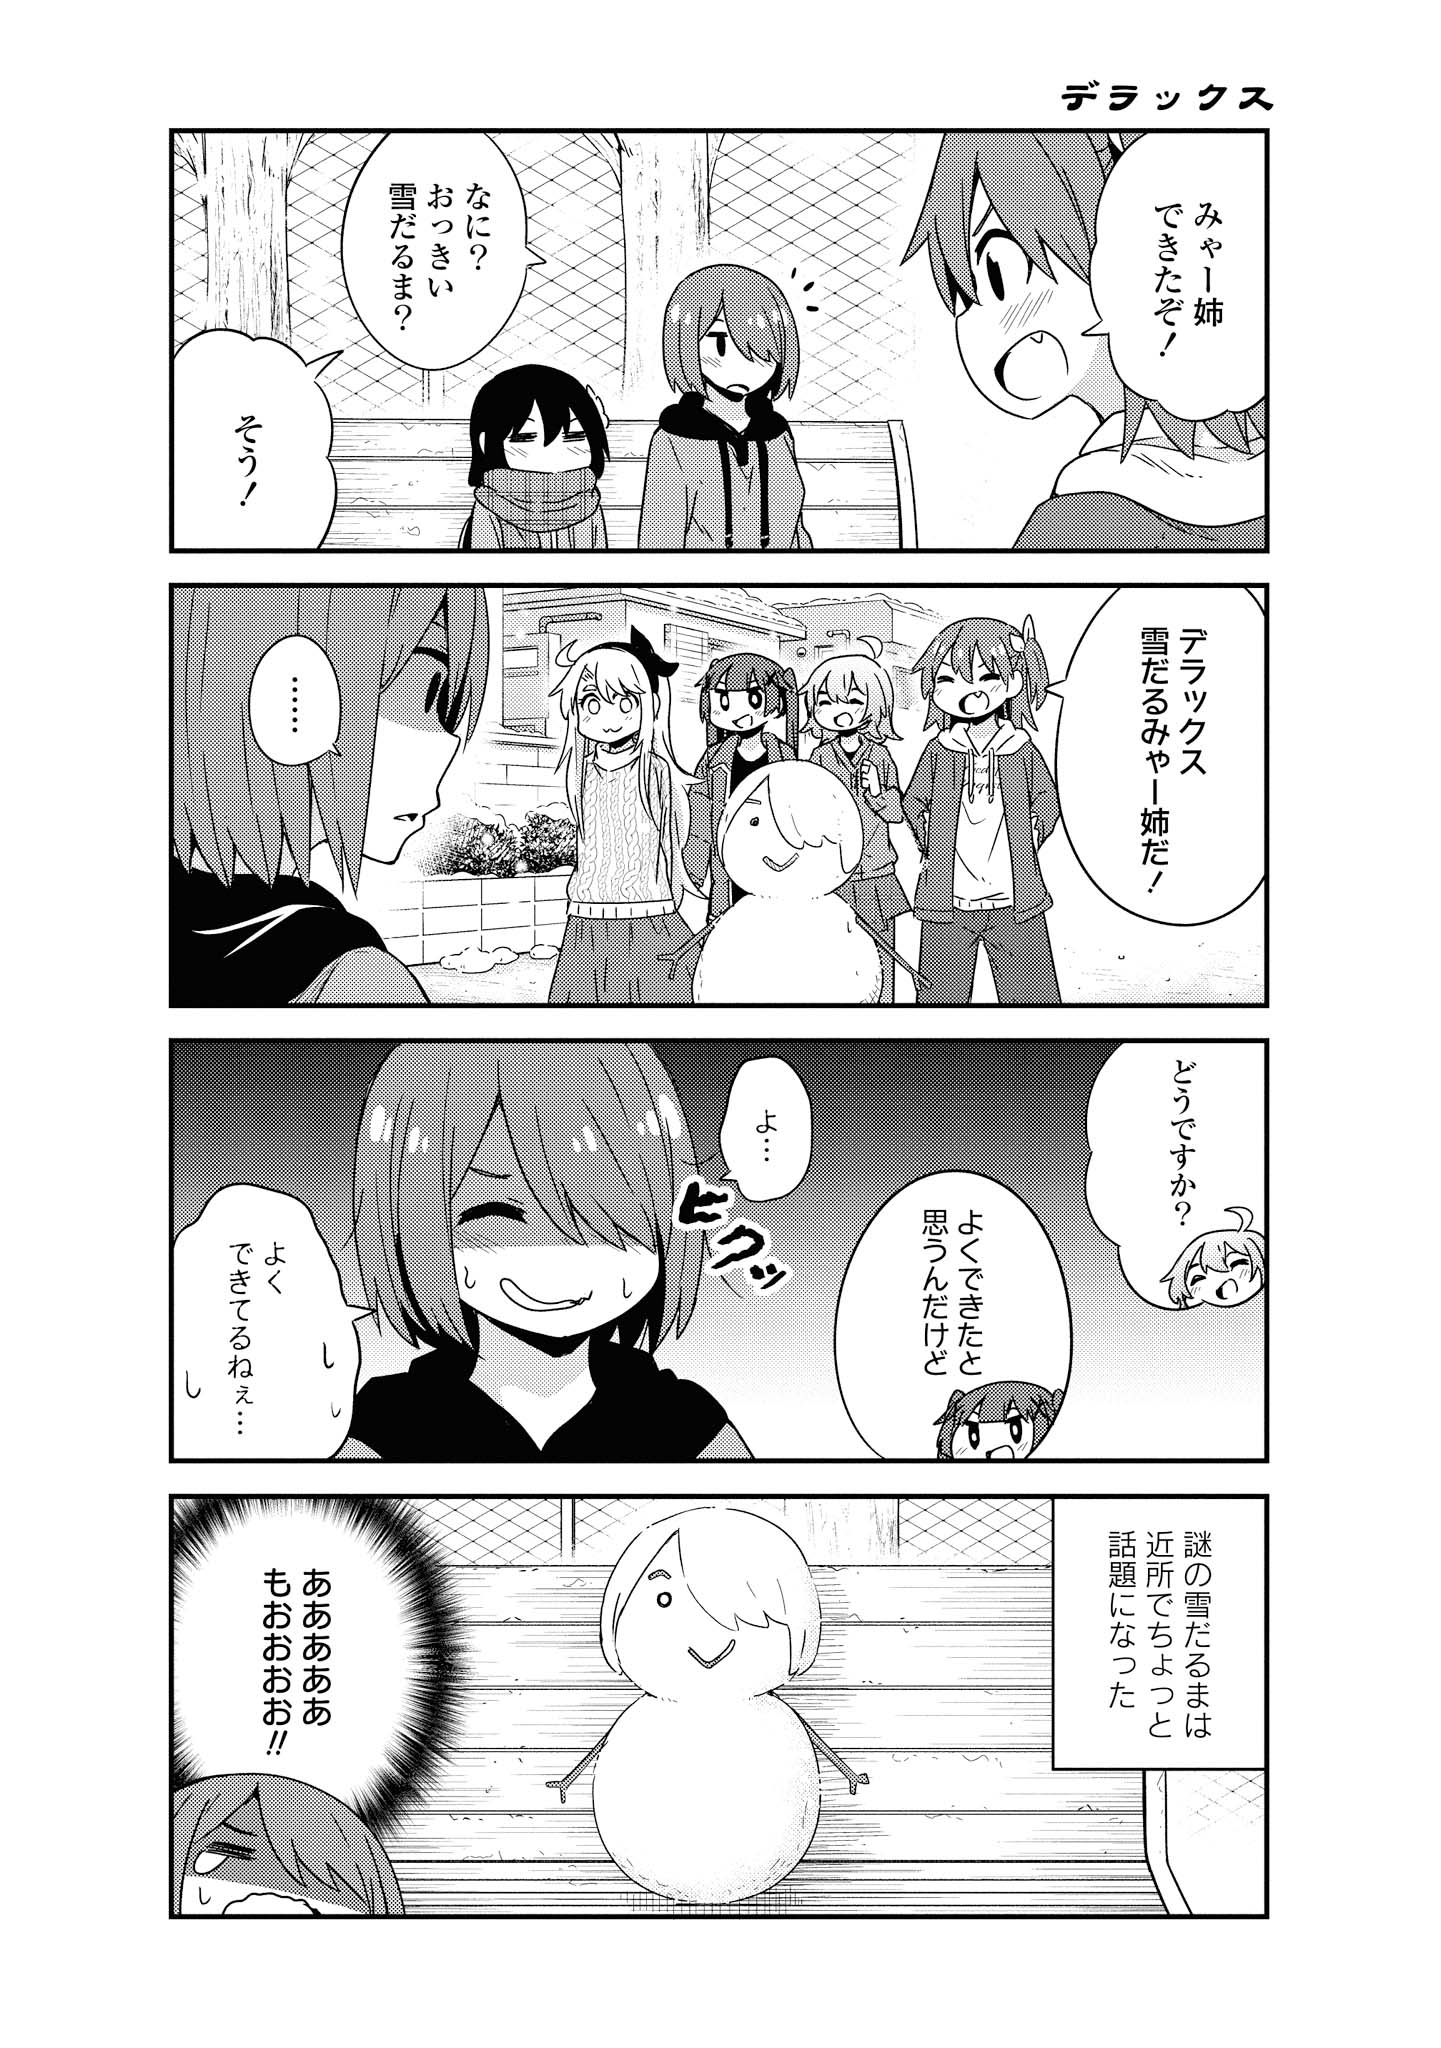 Watashi ni Tenshi ga Maiorita! - Chapter 44 - Page 20